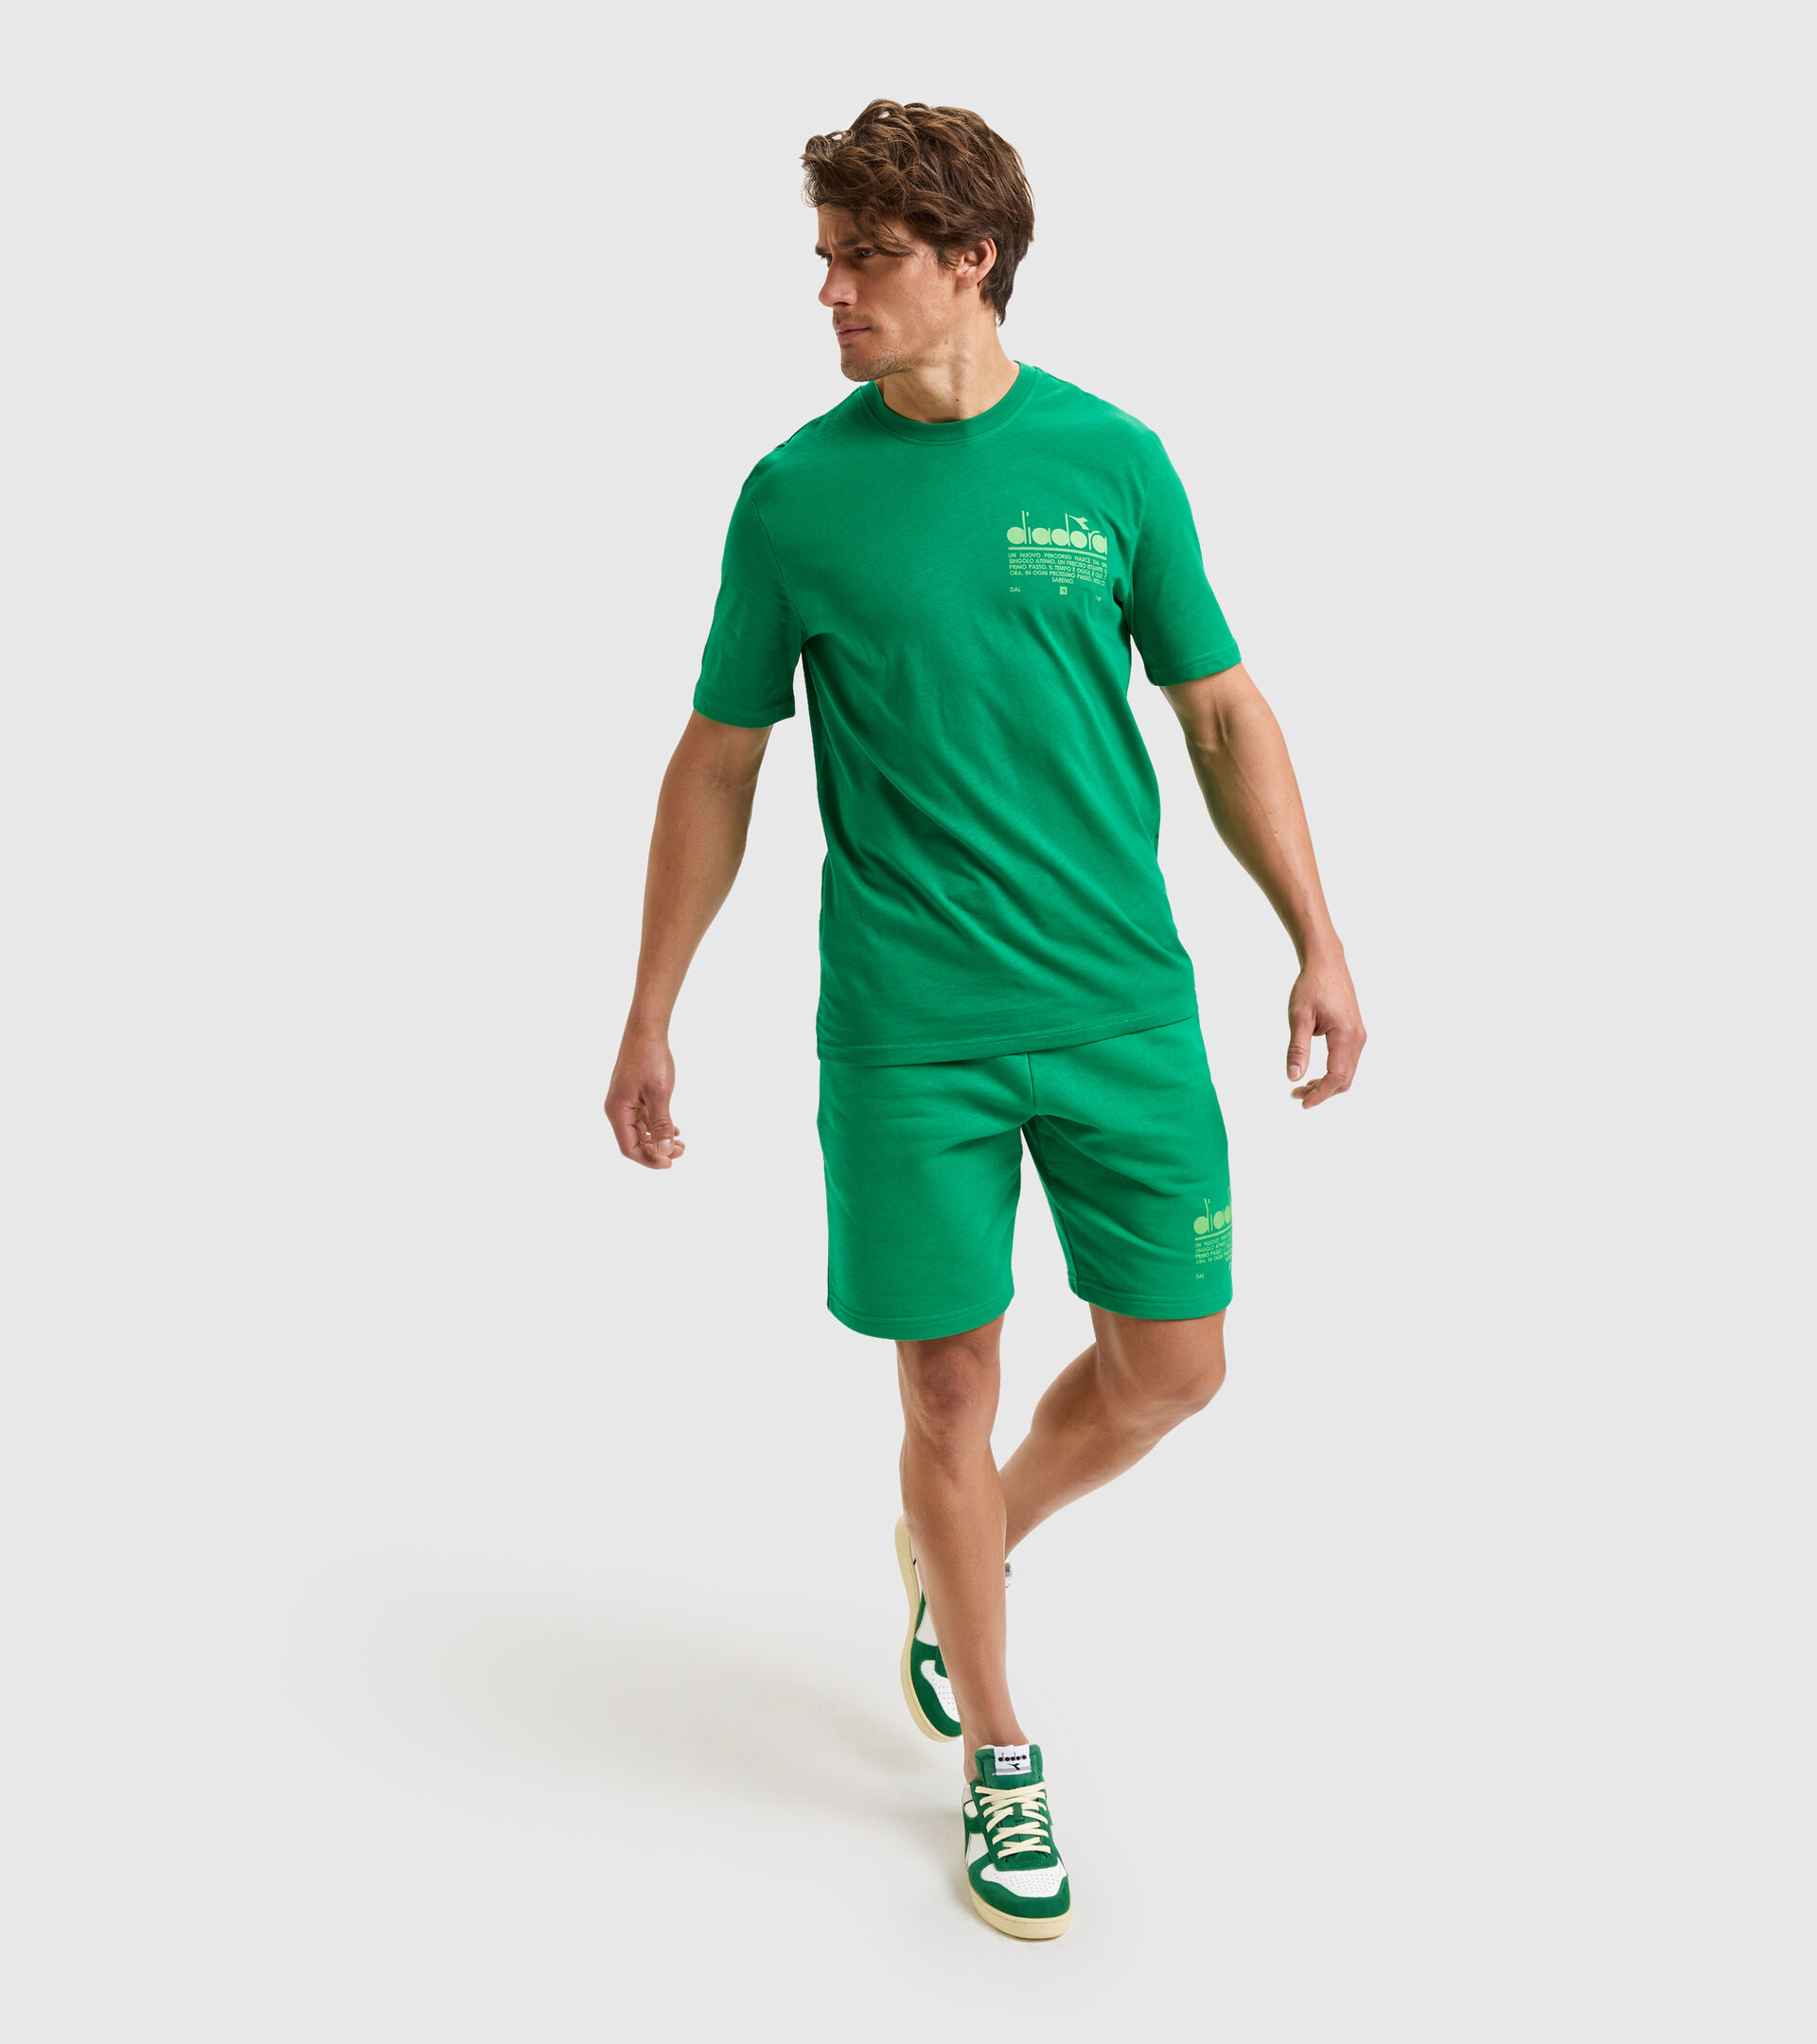 Cotton t-shirt - Unisex T-SHIRT SS MANIFESTO JOLLY GREEN - Diadora